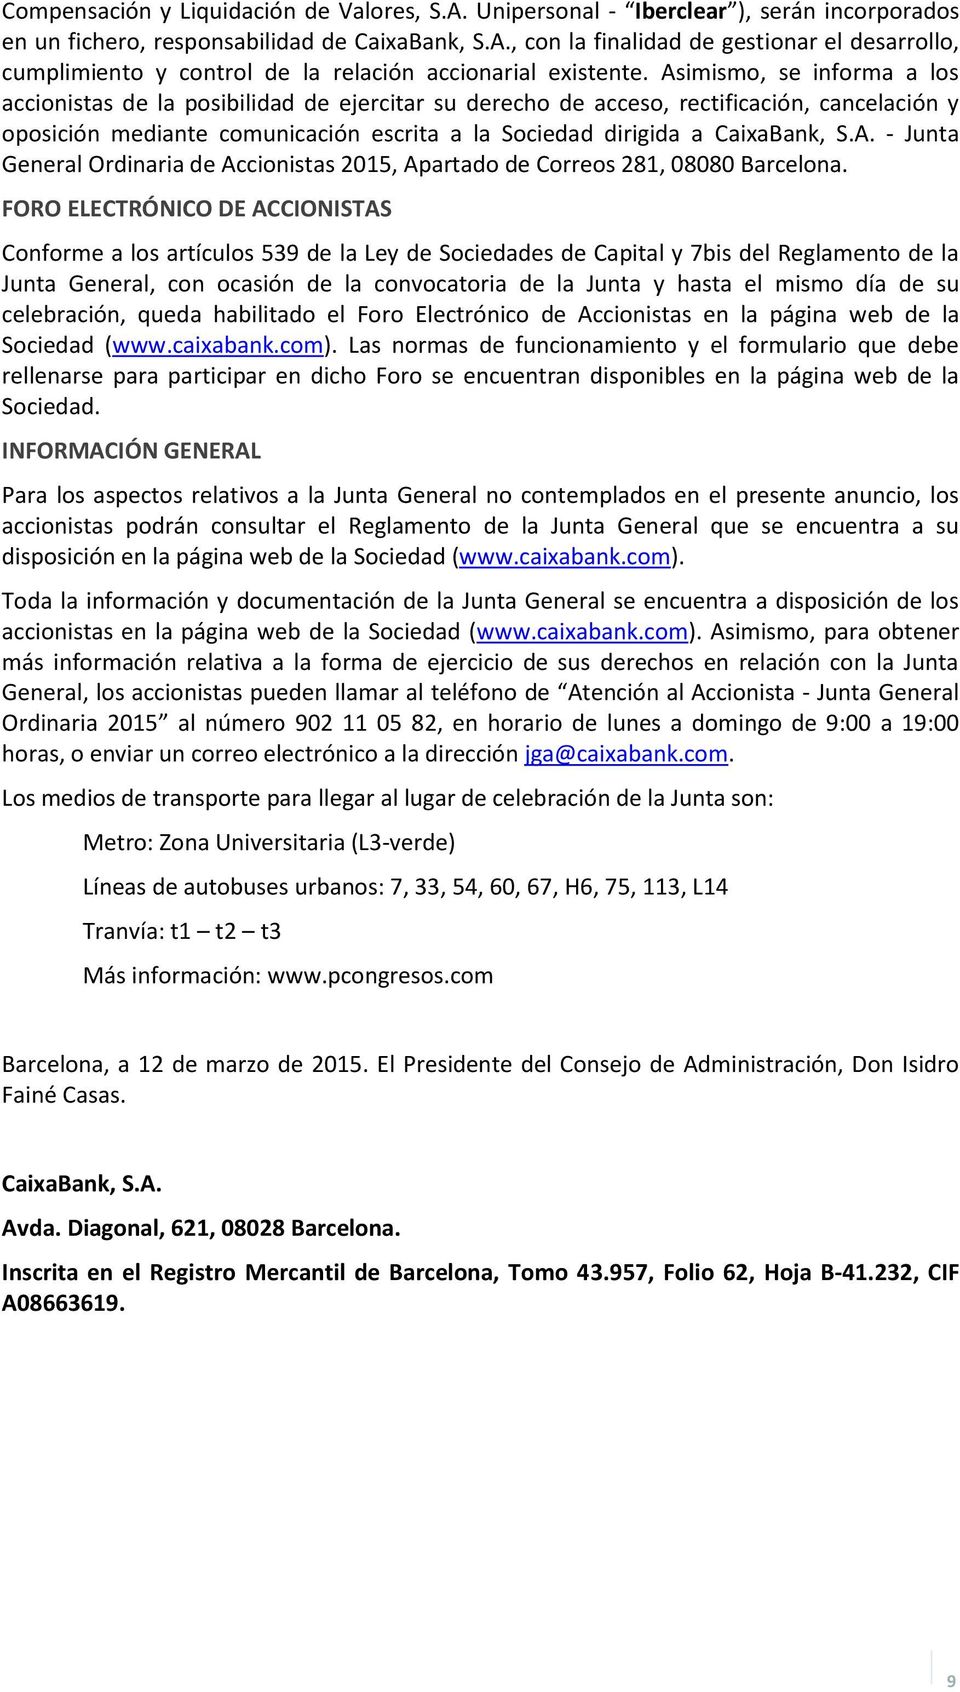 A. - Junta General Ordinaria de Accionistas 2015, Apartado de Correos 281, 08080 Barcelona.